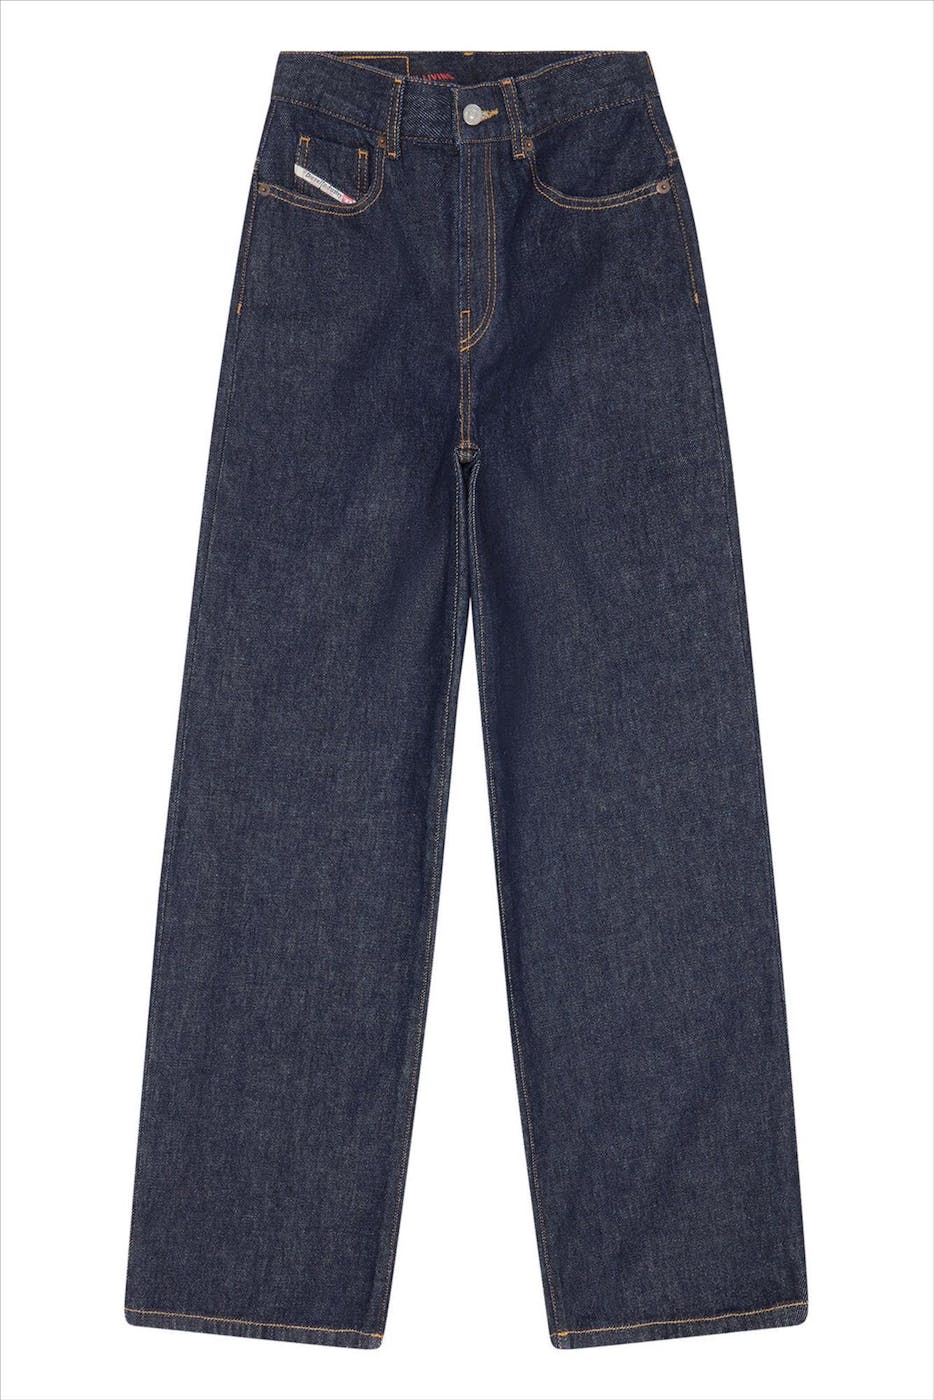 Diesel - Donkerblauwe 2000 Widee jeans